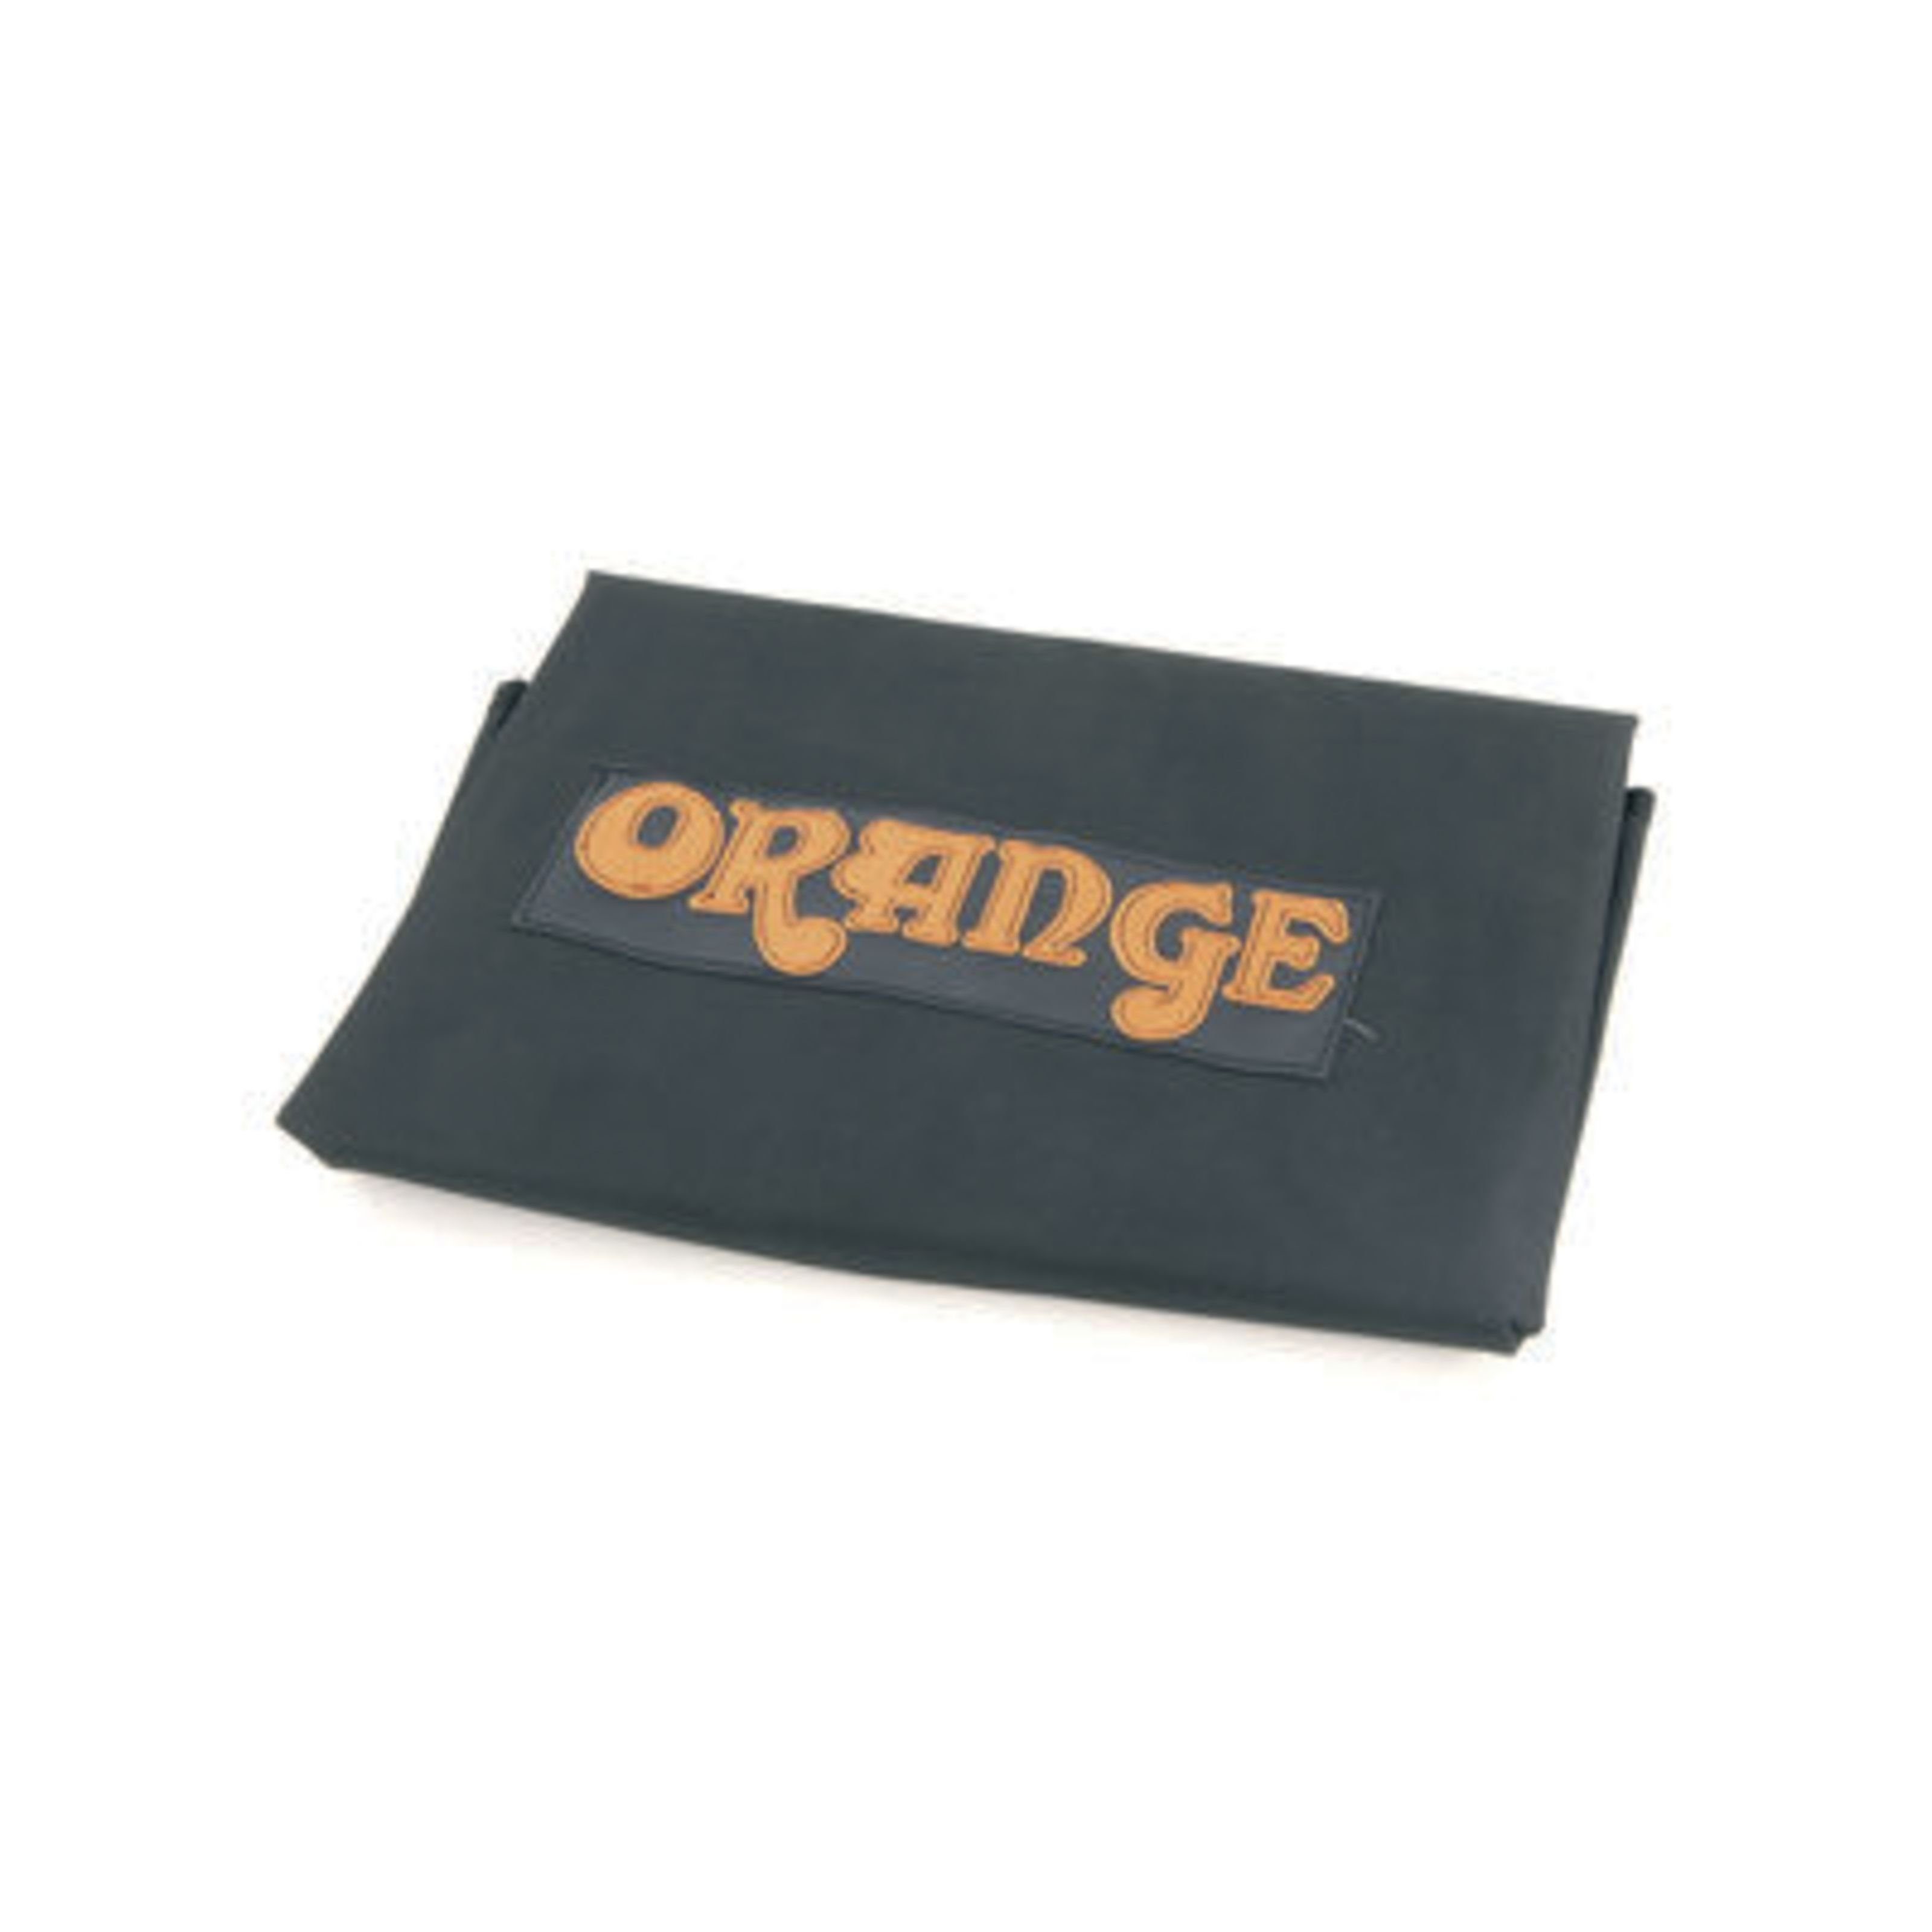 Orange Lautsprechertasche (Cover für 4x12" Box schräge Version (PPC412Slope), E-Gitarren Verstärker, Amp und Boxen Cover), Cover für 4x12" Box schräge Version (PPC412Slope) - Cover für